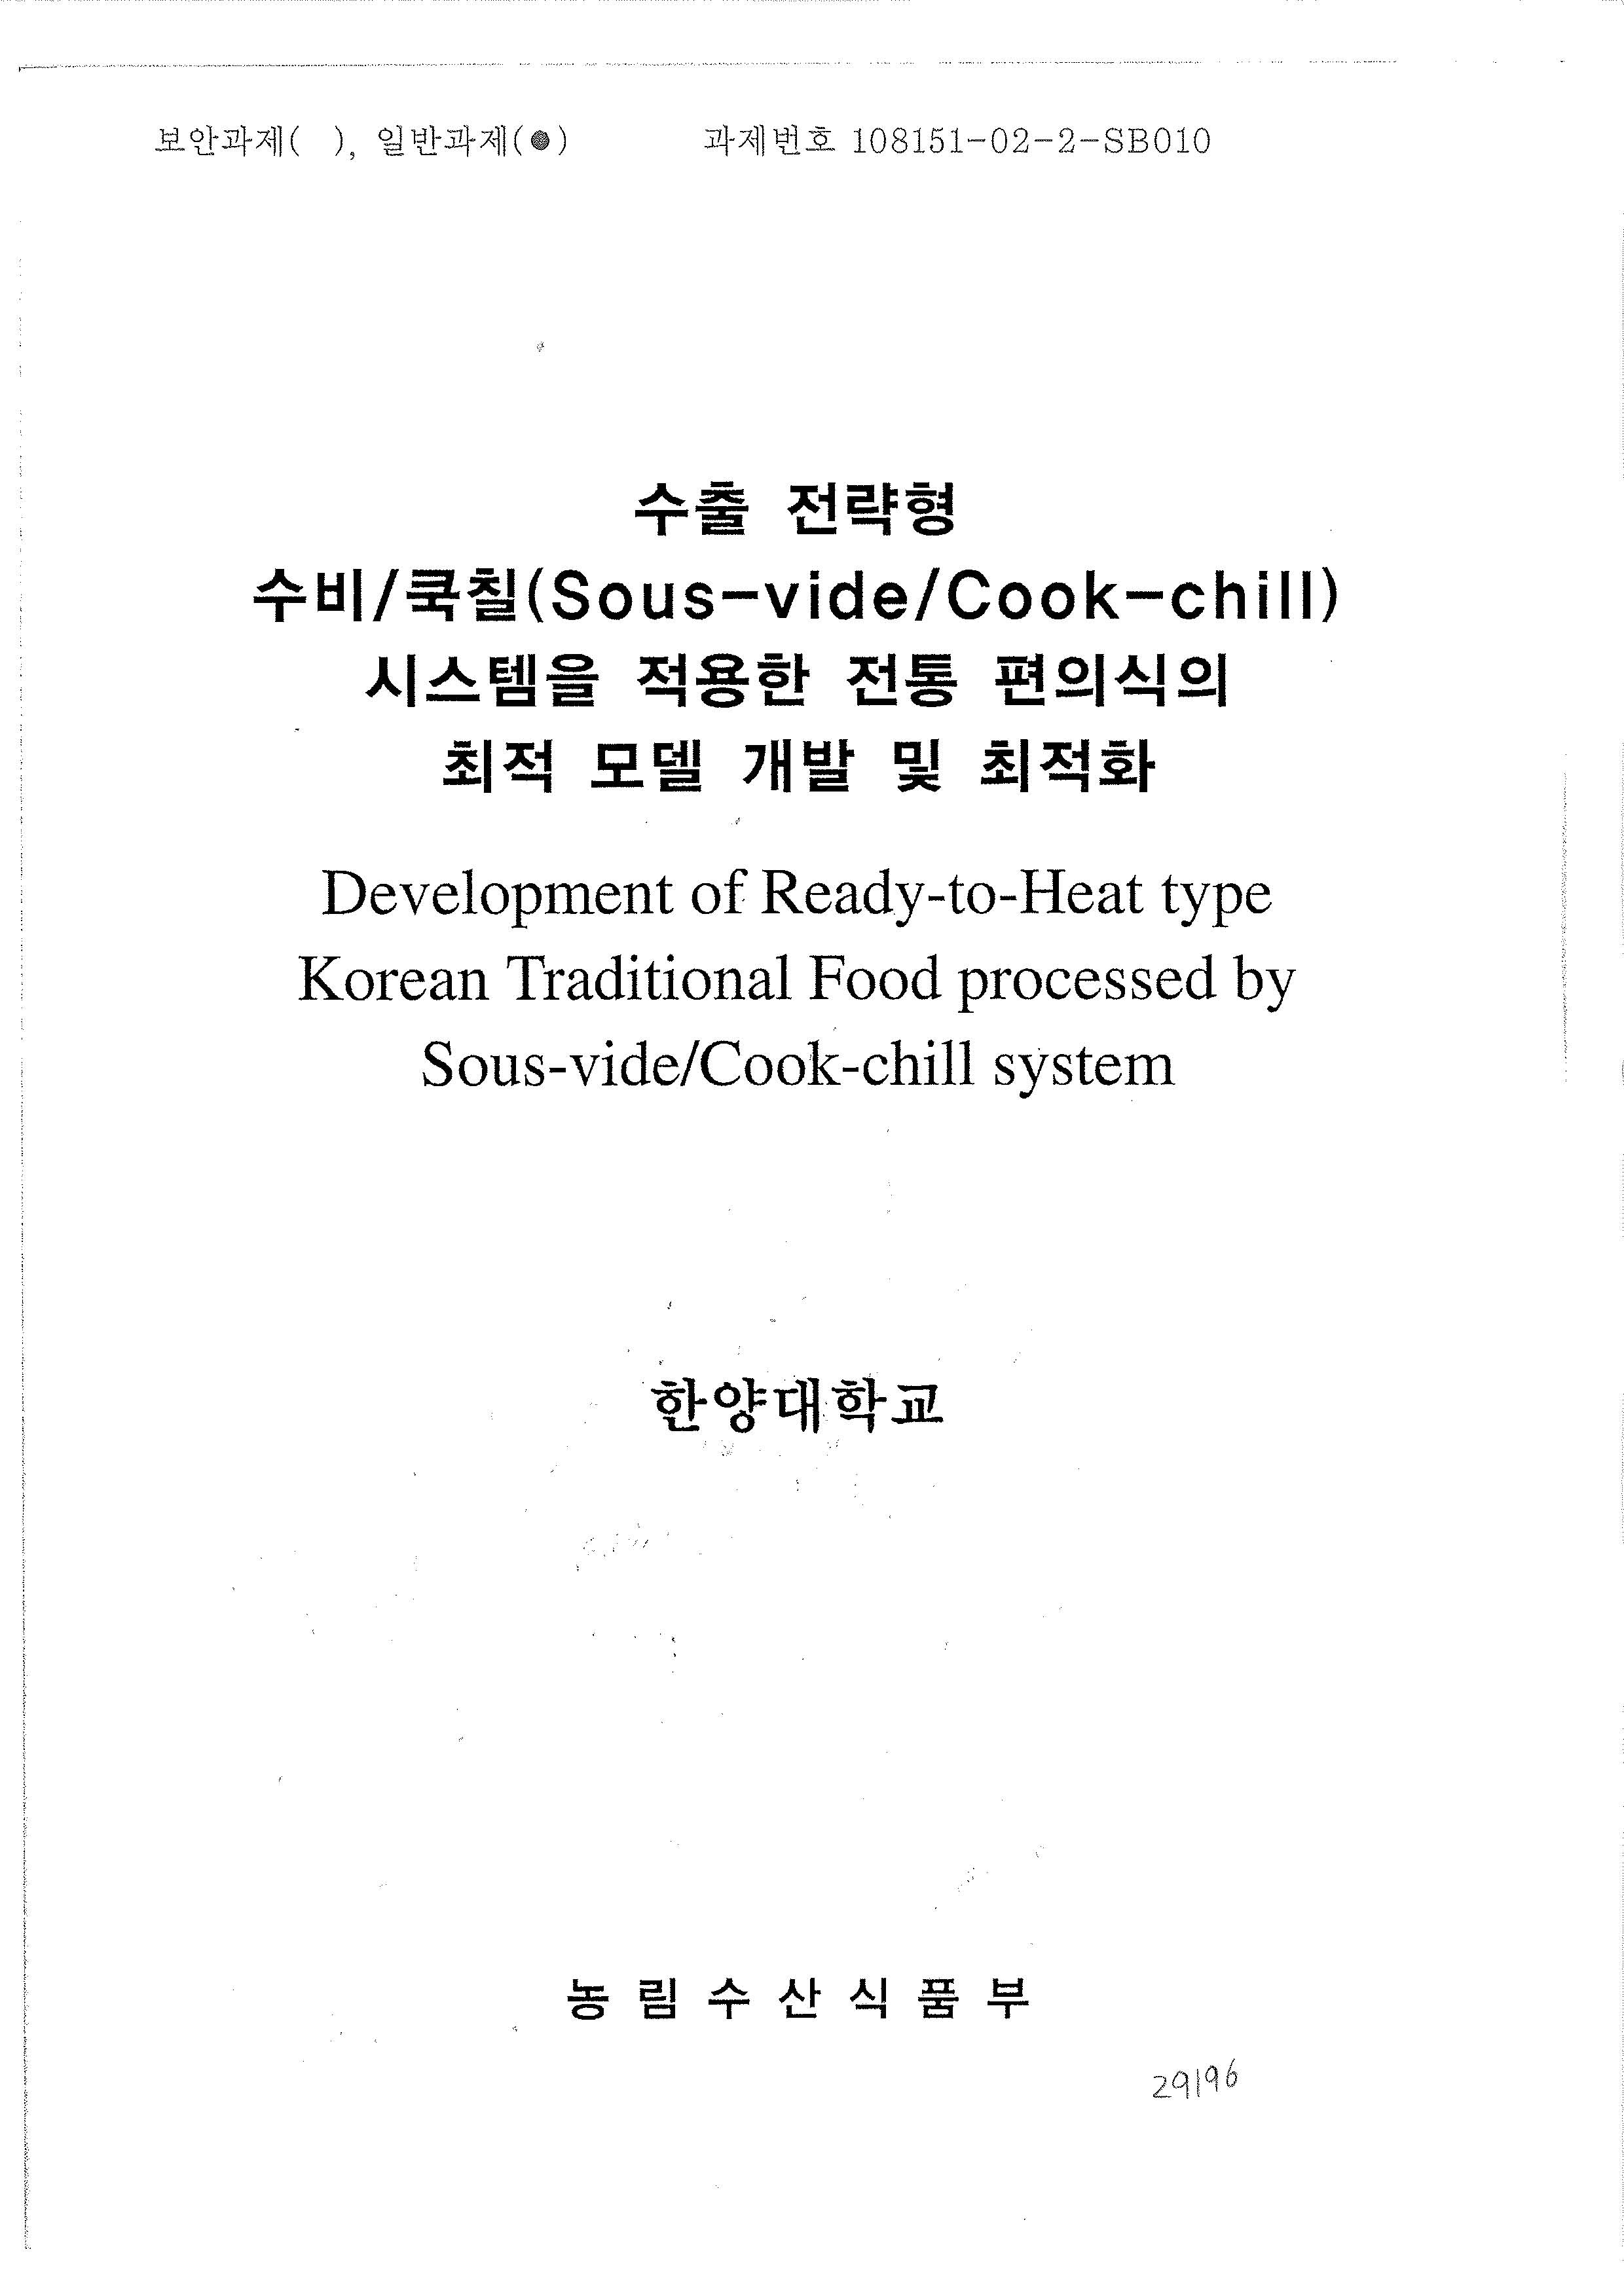 수출 전략형 수비/쿡칠(Sous-vide/Cook-chill) 시스템을 적용한 전통 편의식의 최적 모델 개발 및 최적화